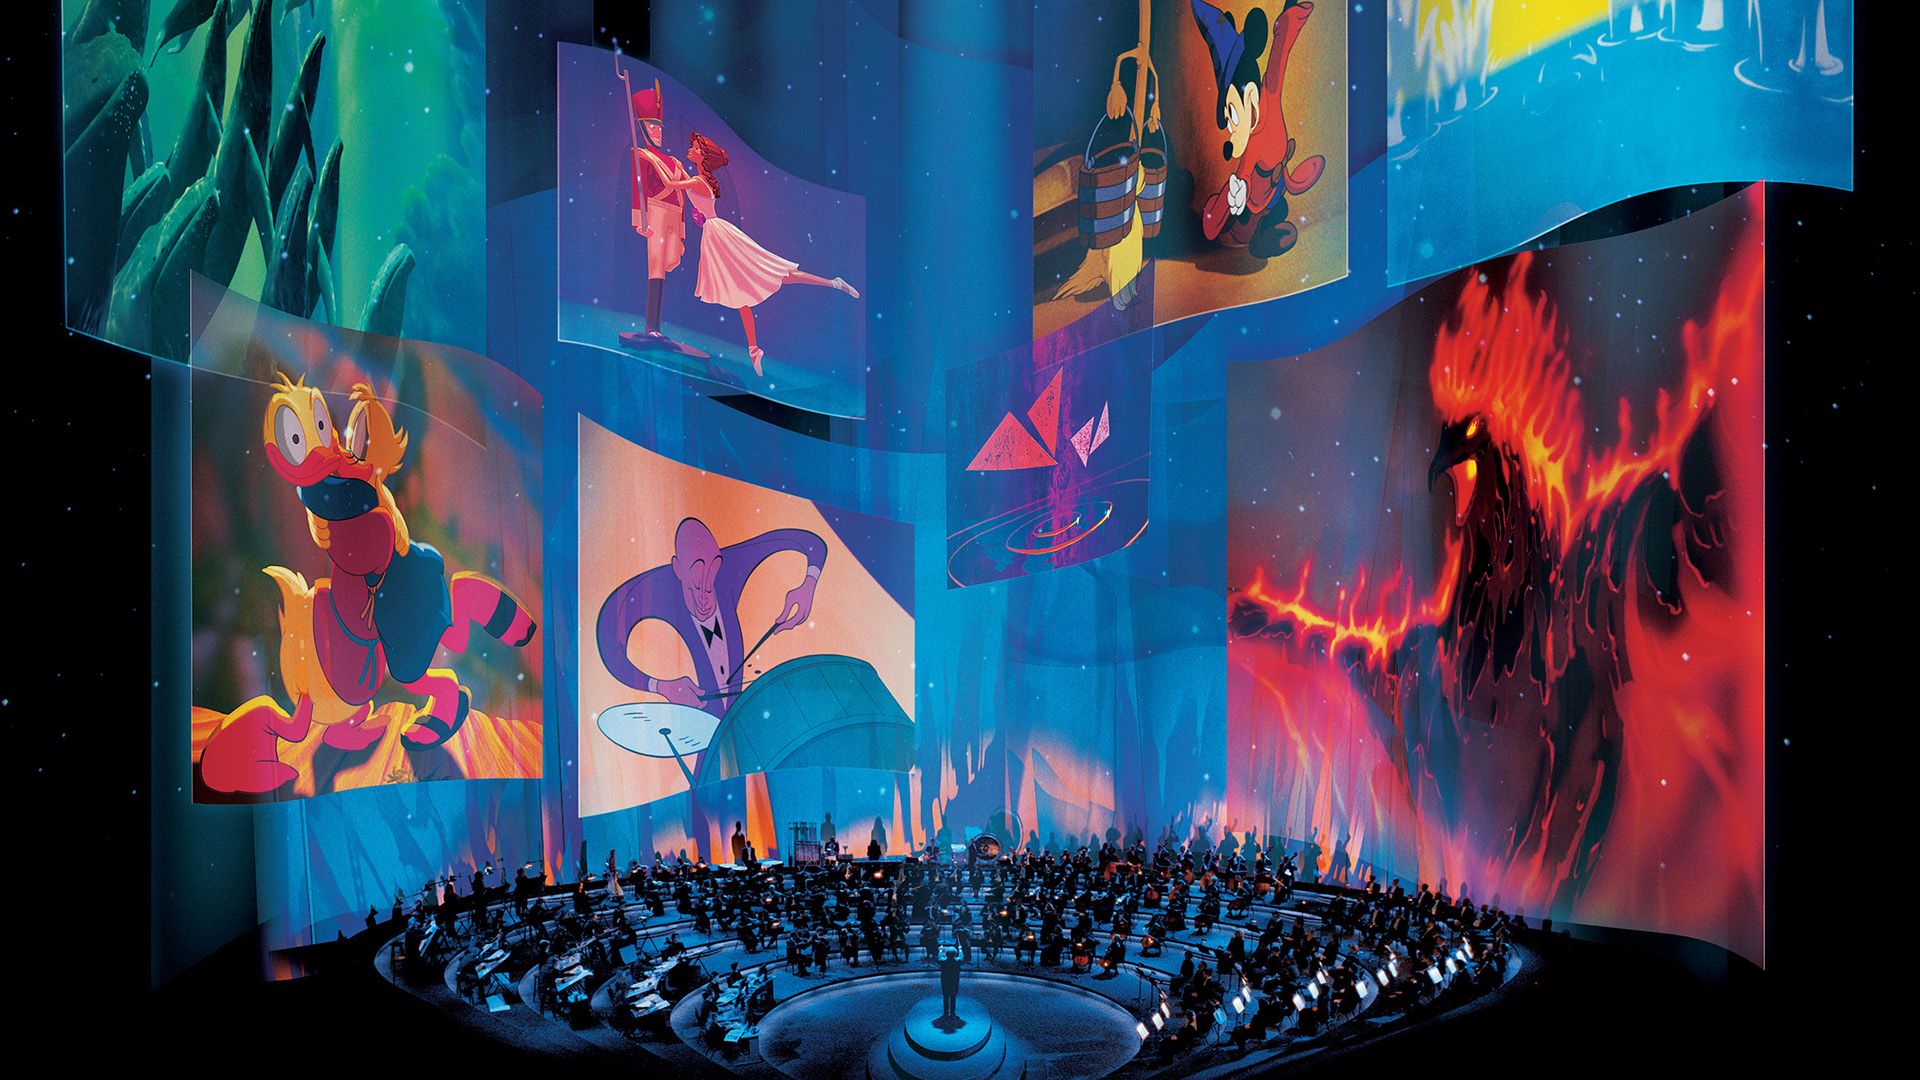 Fantasia 2000 background